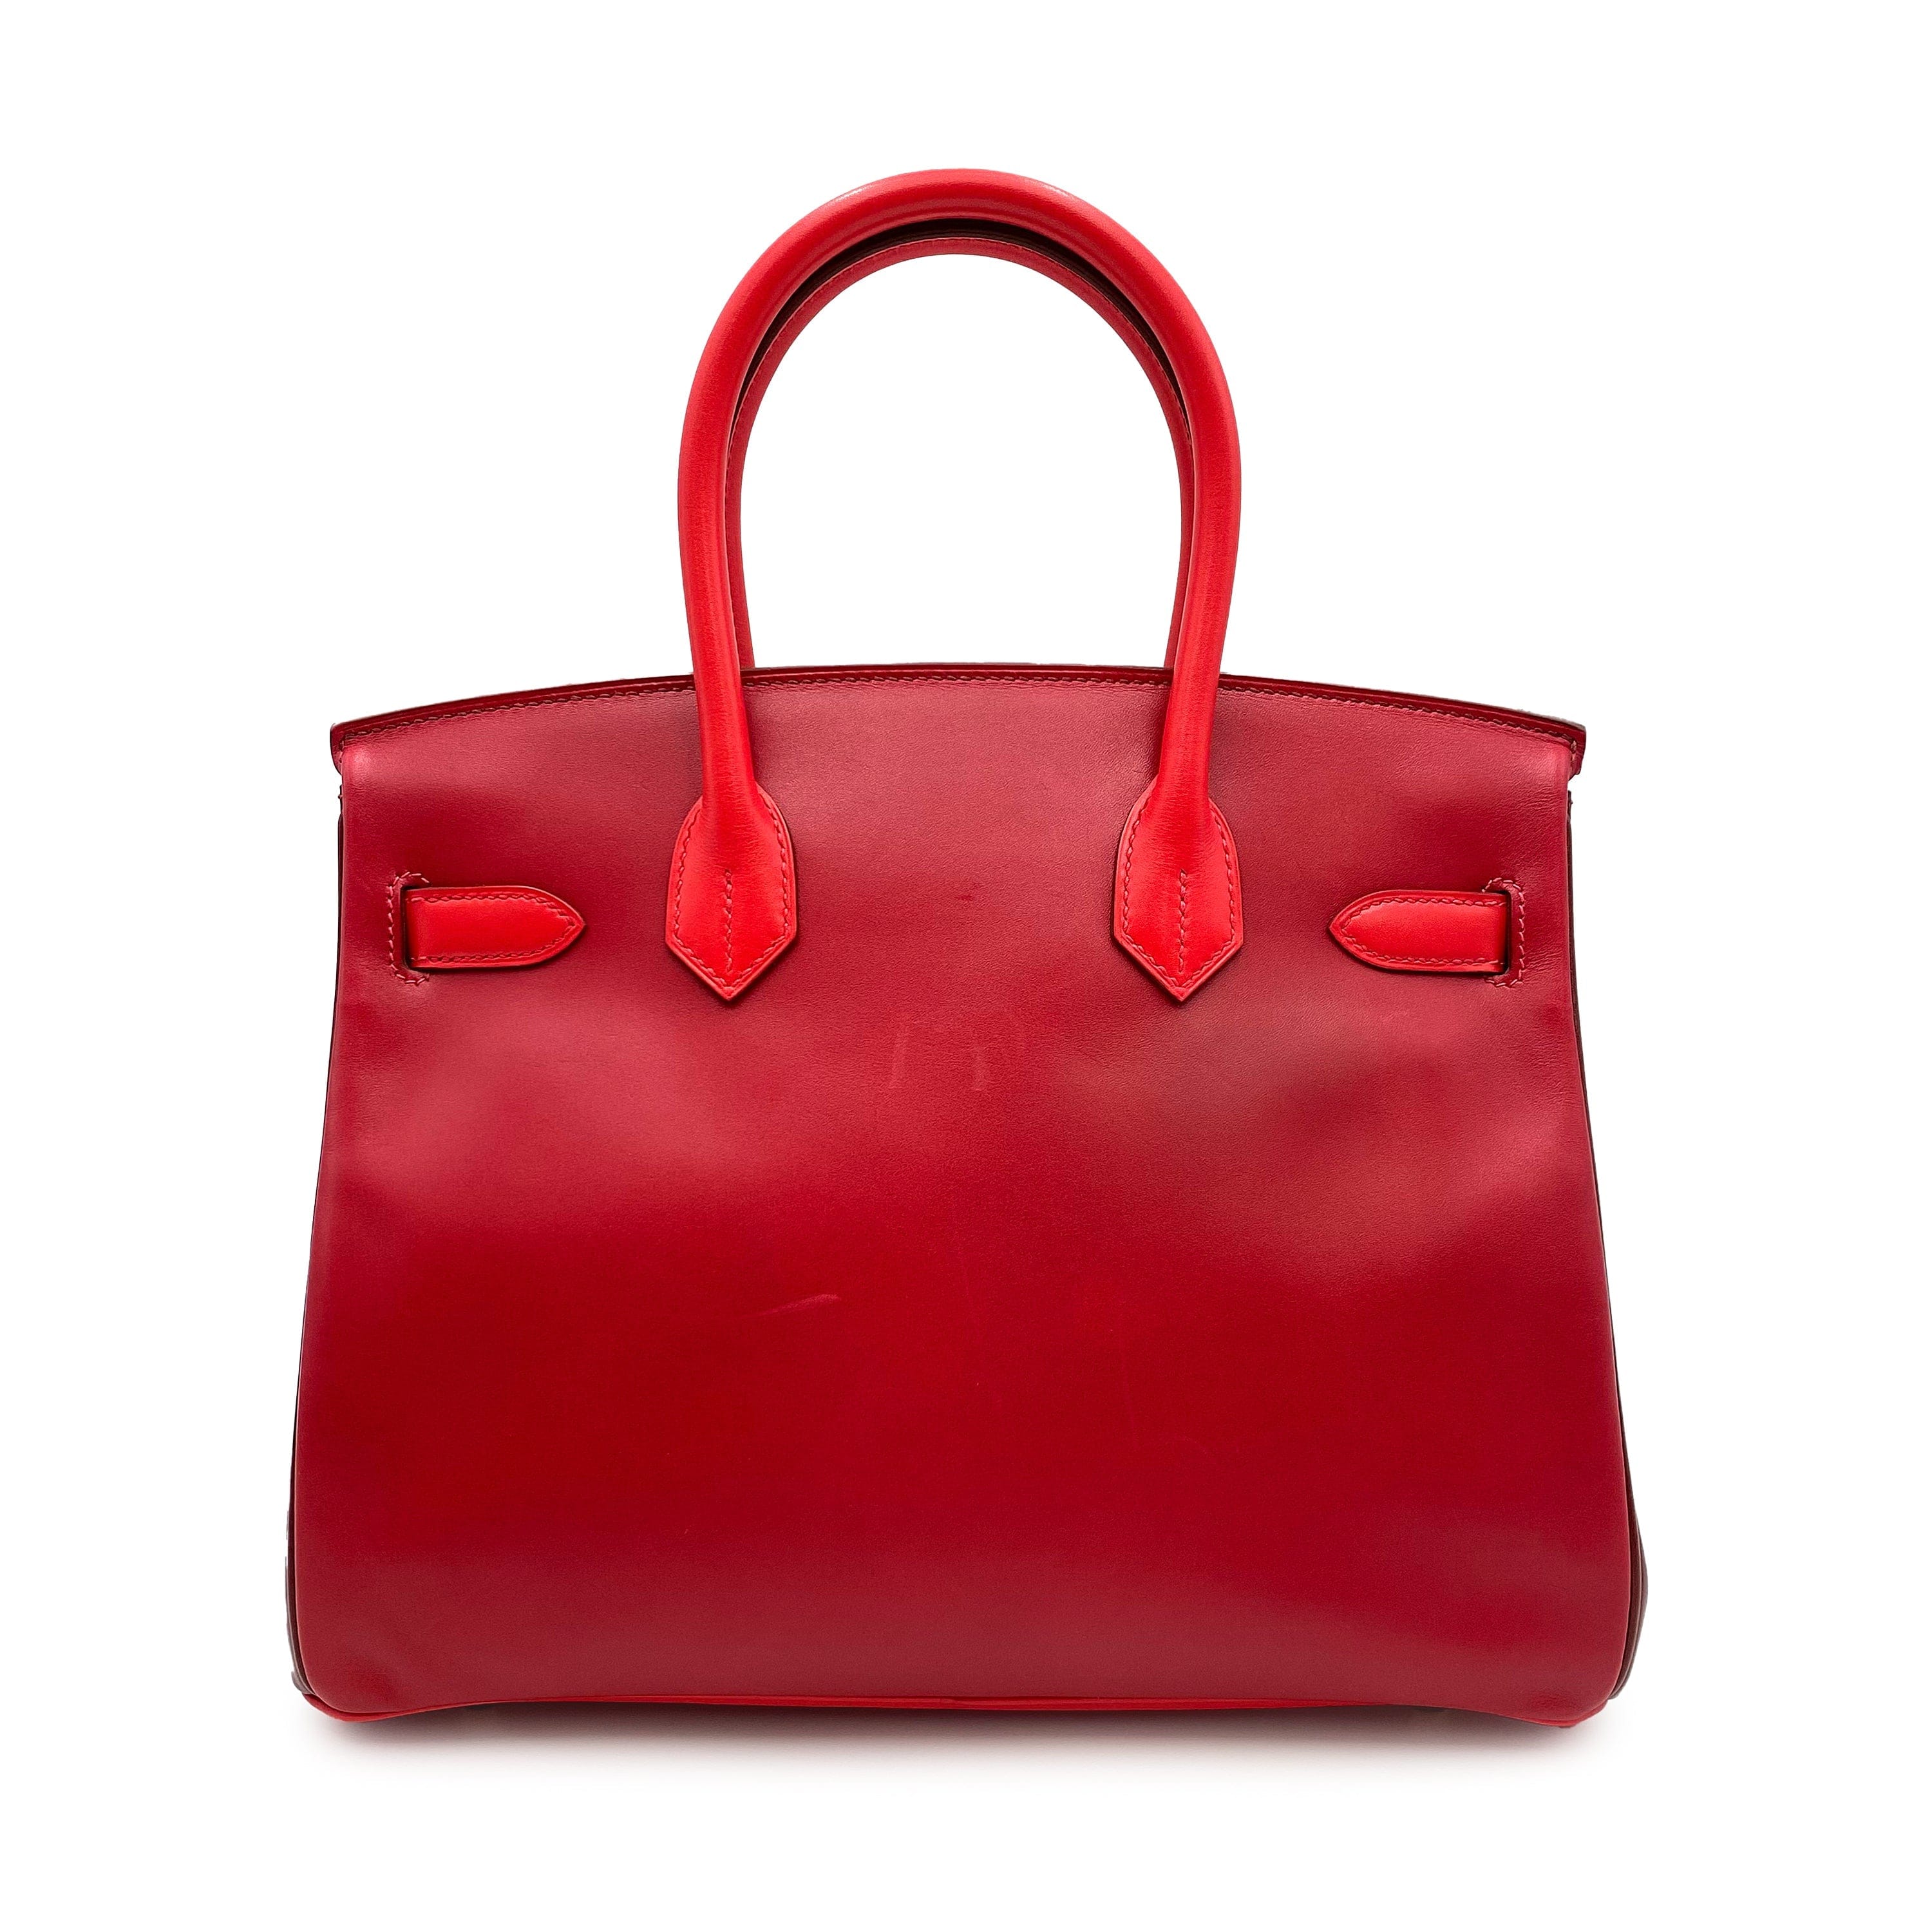 Hermès Hermes Birkin 30 Quad-Colour Rouge Tadelakt GHW #P